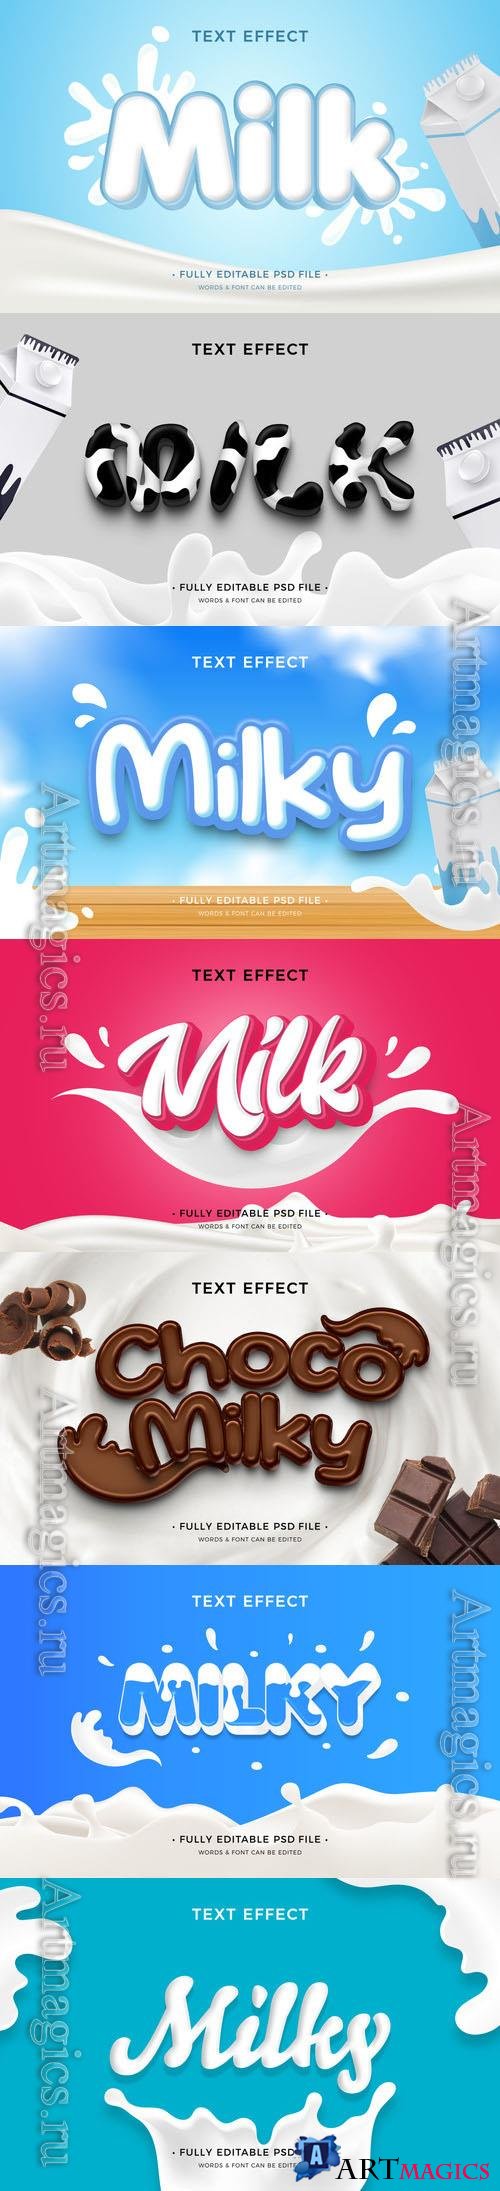 PSD milk text effect